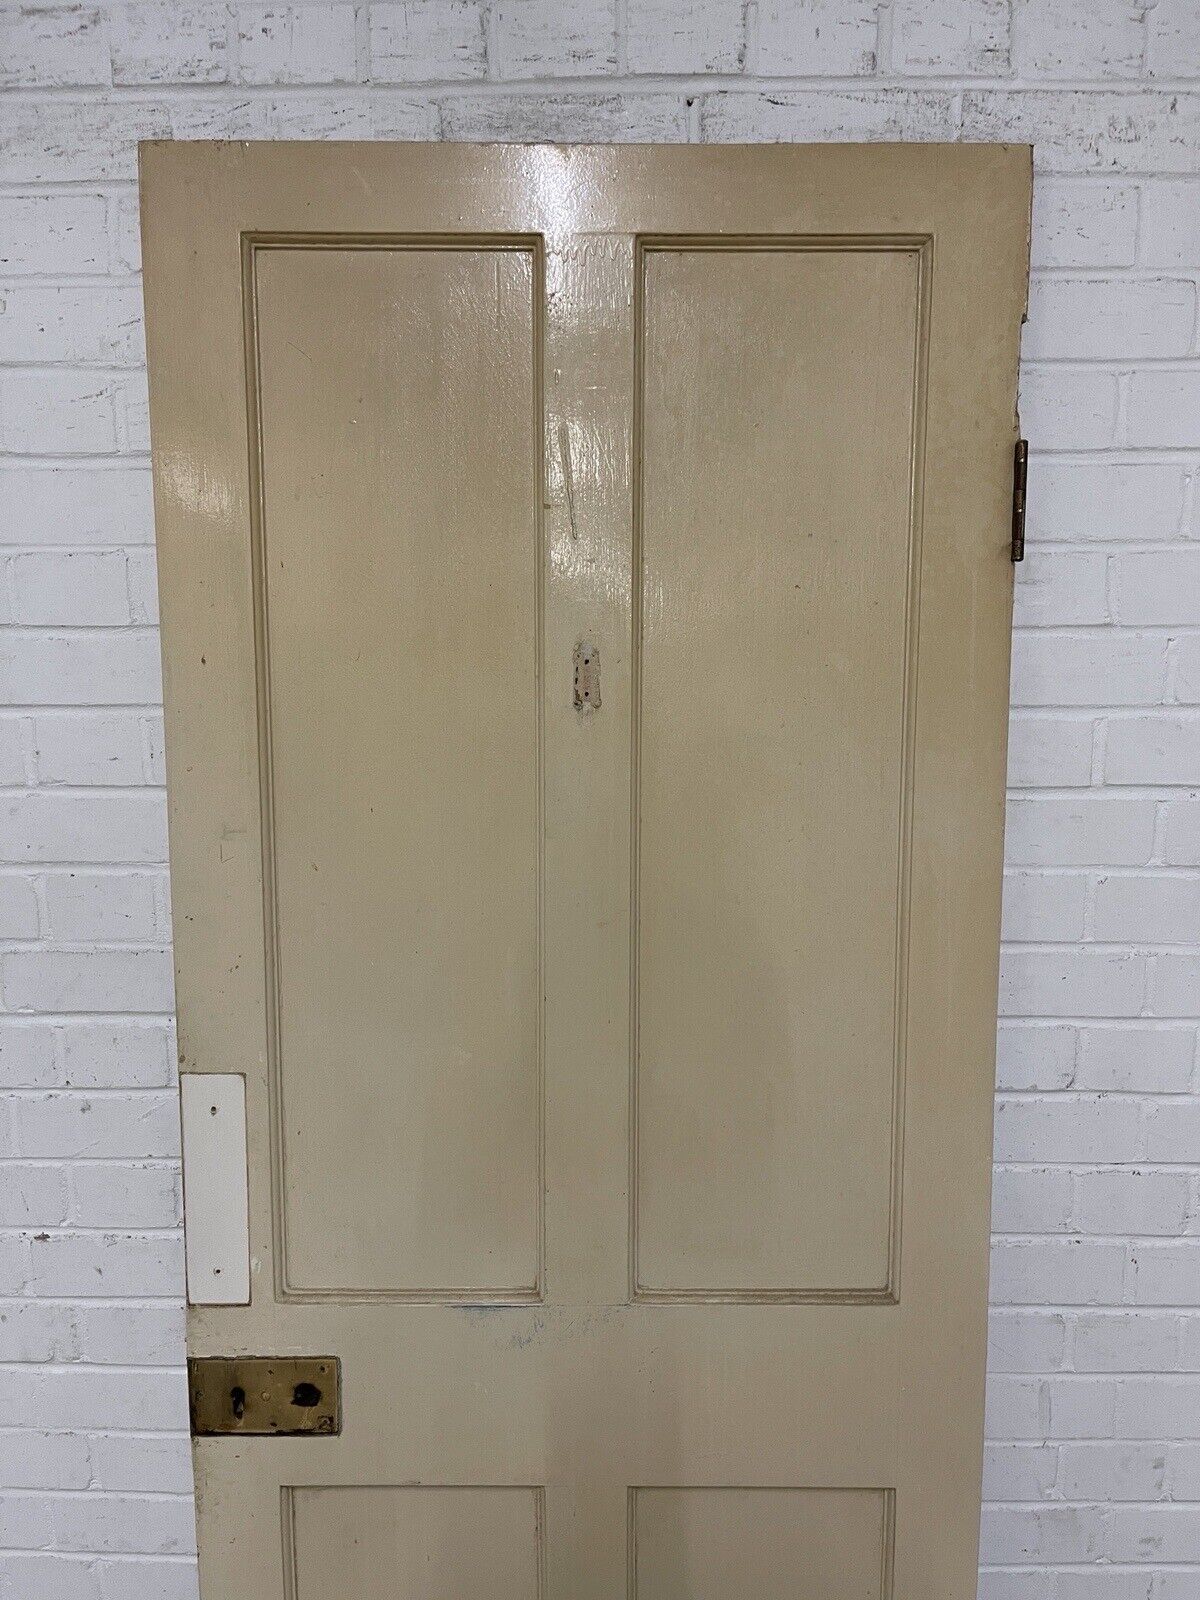 Reclaimed Victorian Pine Internal 4 panel Door 1940 or 1945 x 755 or 760mm